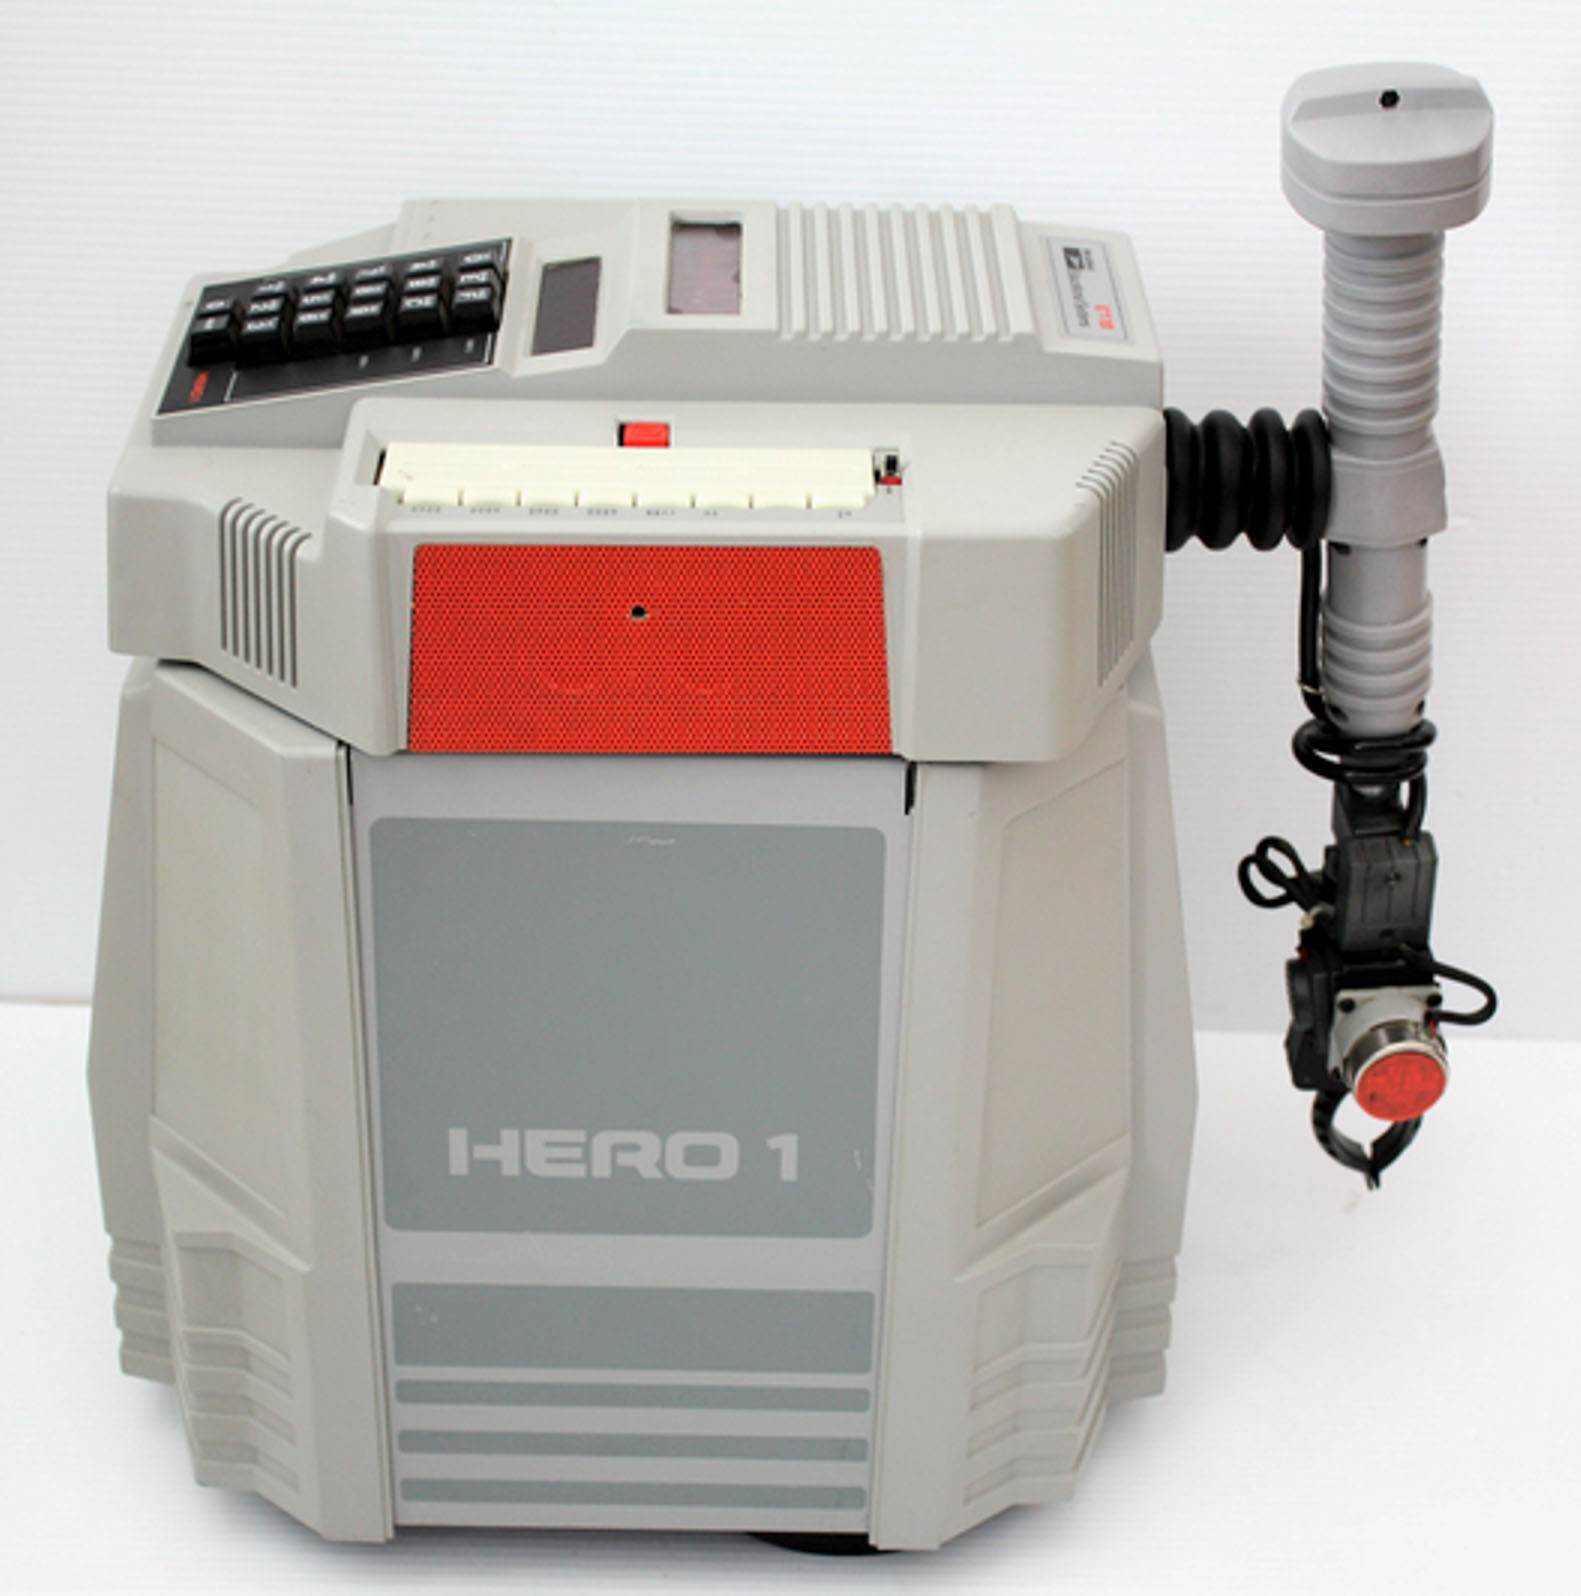 Original Heathkit HERO 1 Robot Circuit Board Standoffs Mounts Stand Offs Qty 4 